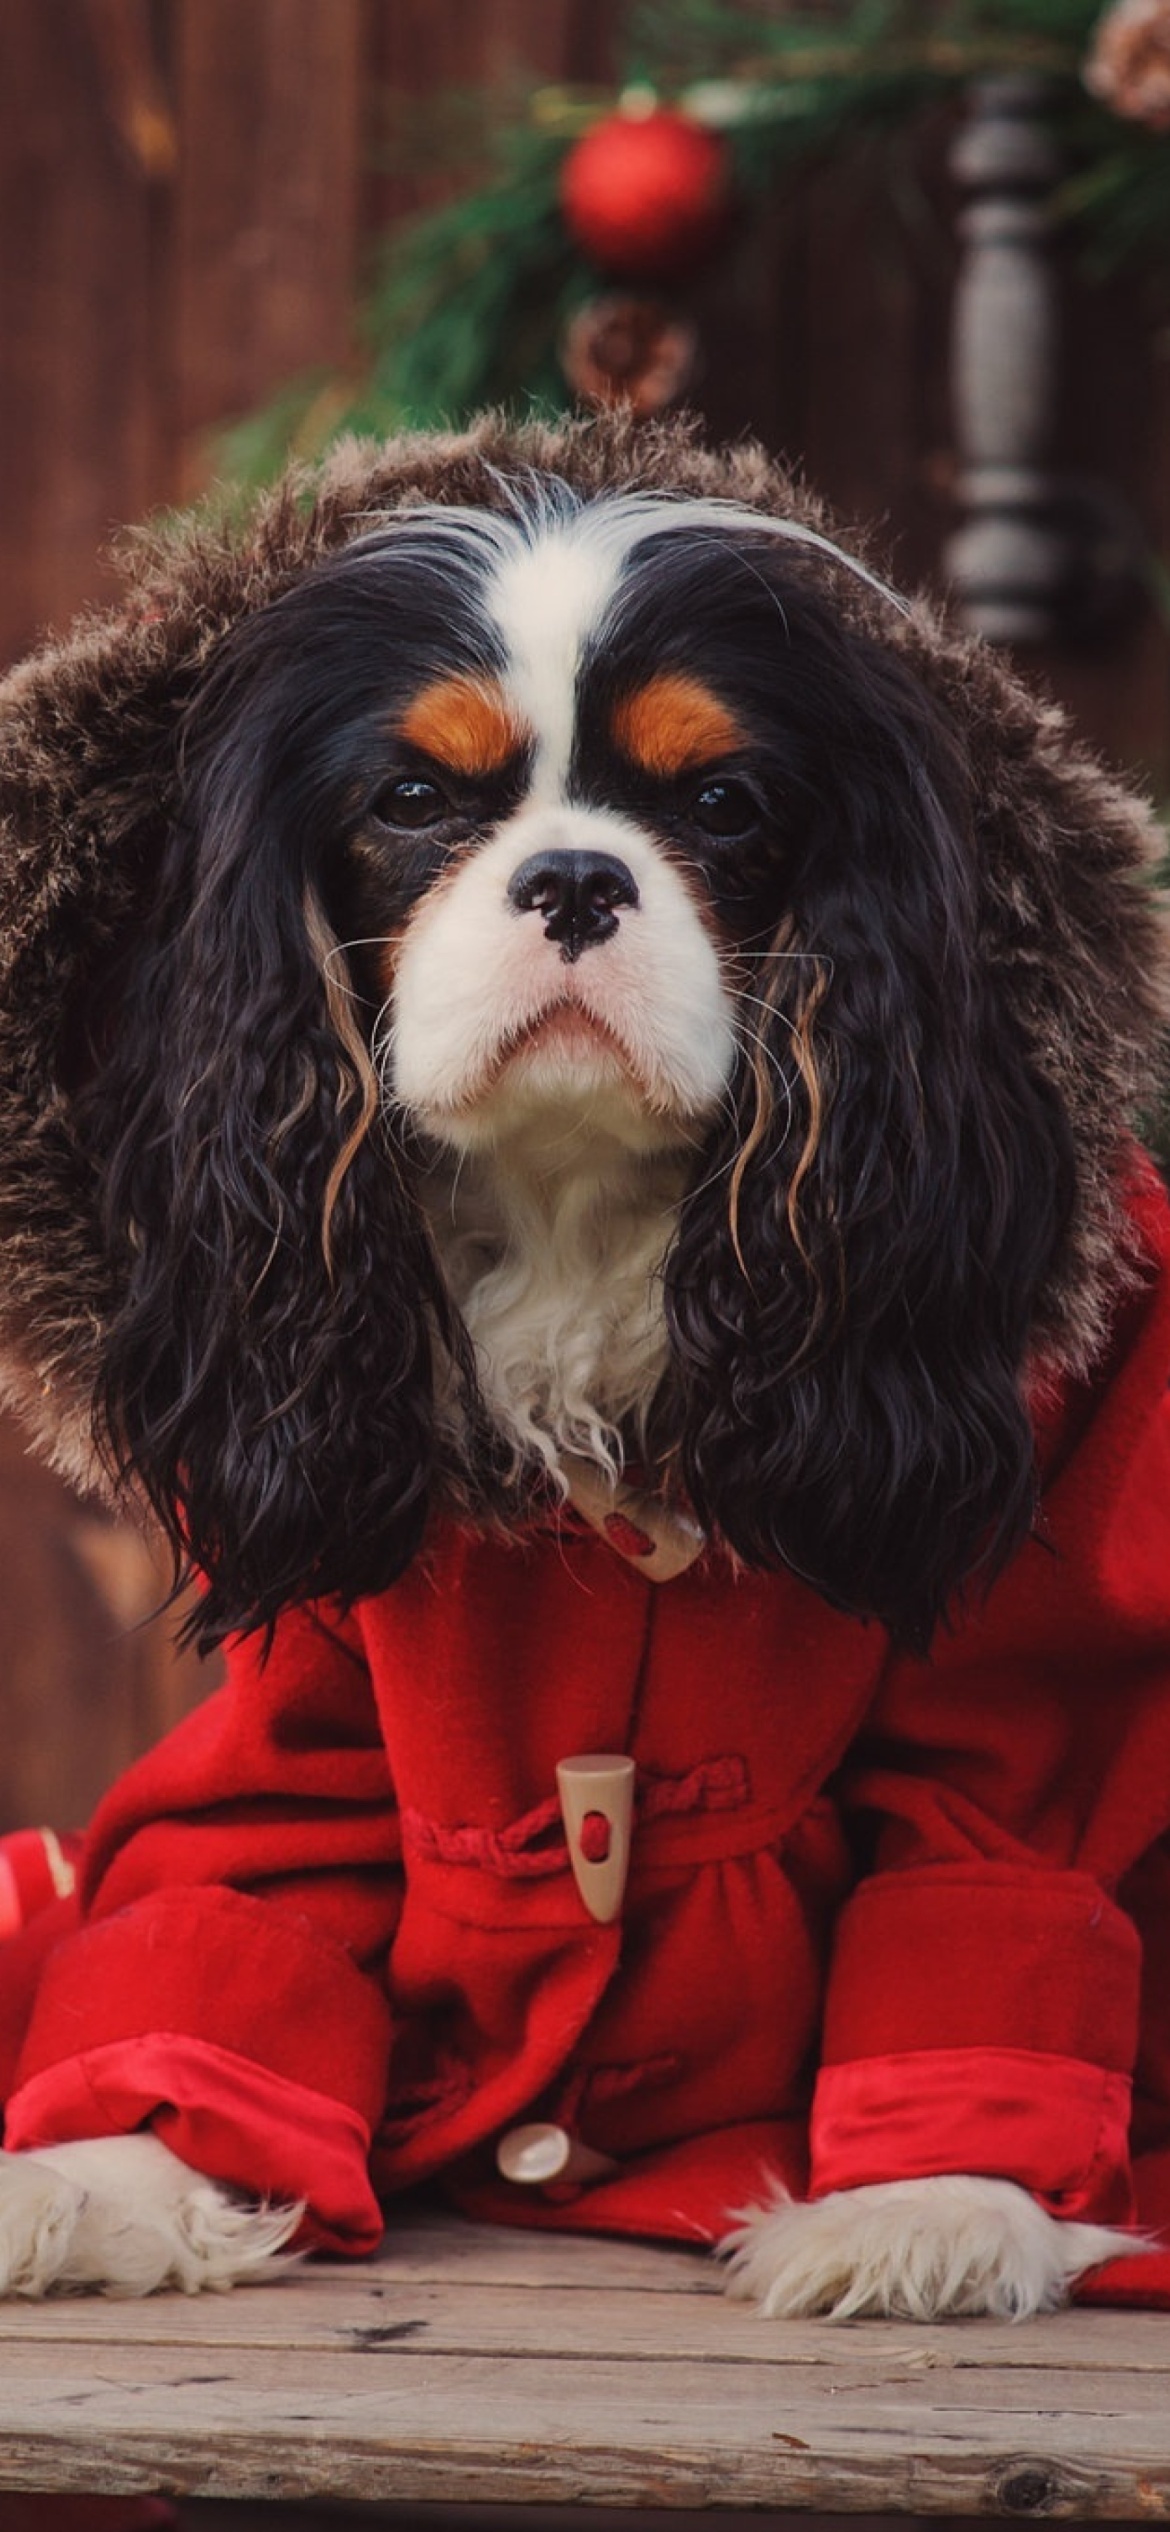 Обои Dog Cavalier King Charles Spaniel in Christmas Costume 1170x2532